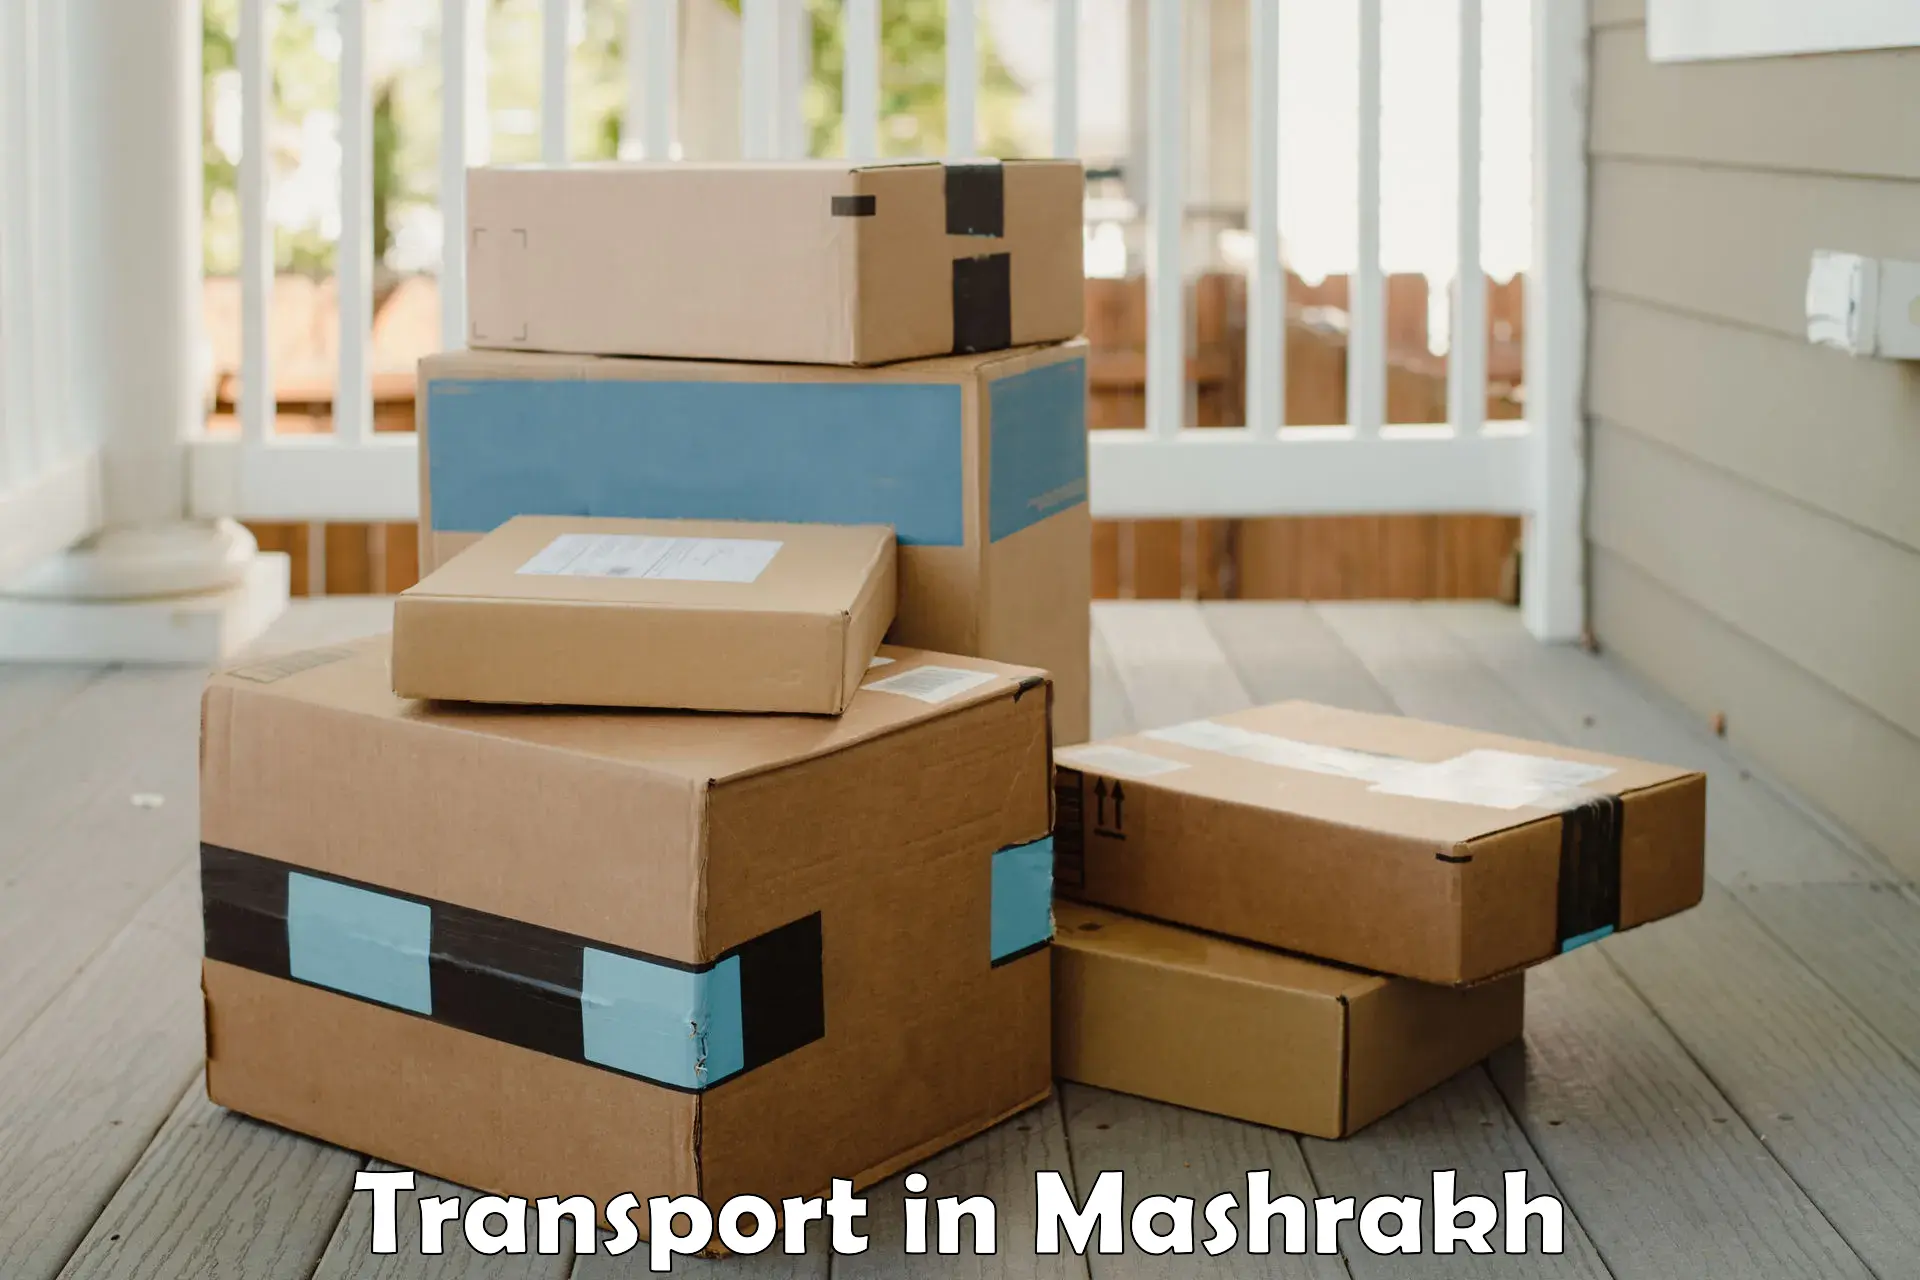 Furniture transport service in Mashrakh